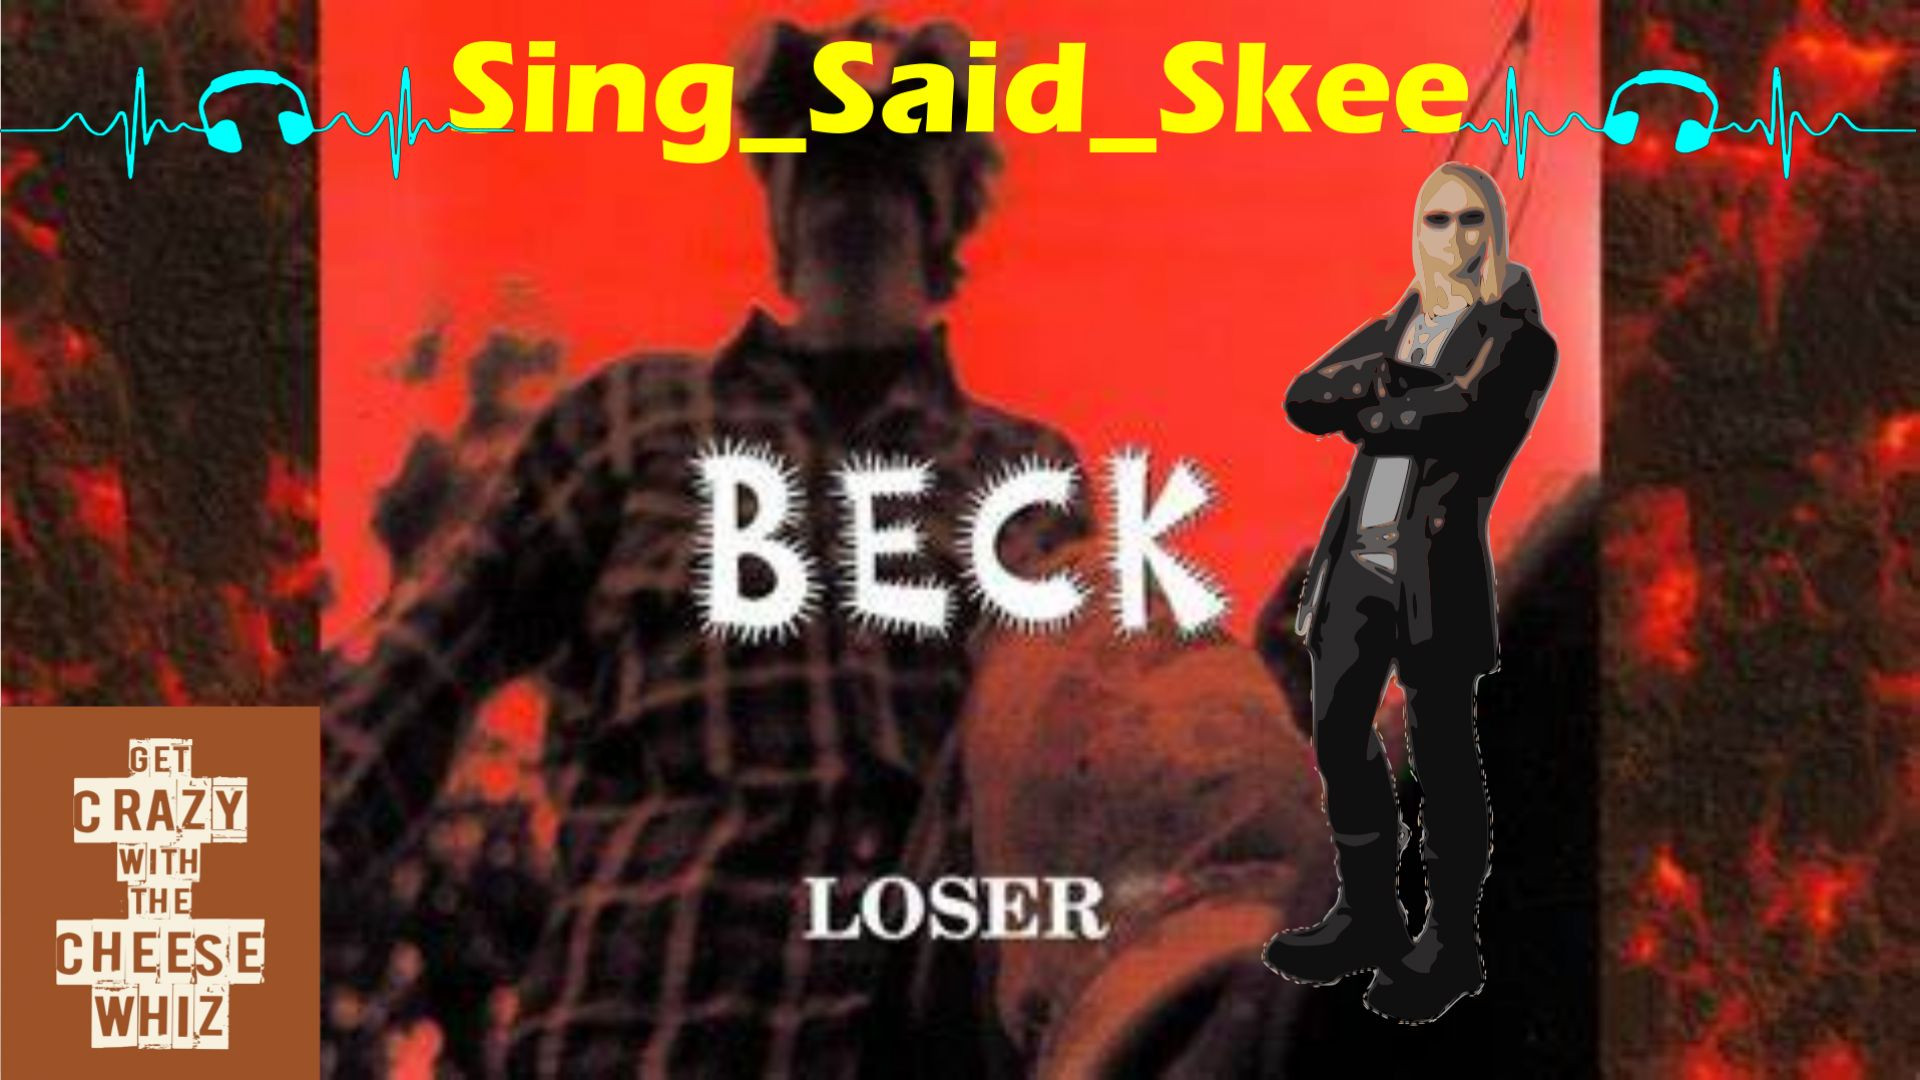 Loser - Beck - Sing_Said_Skee